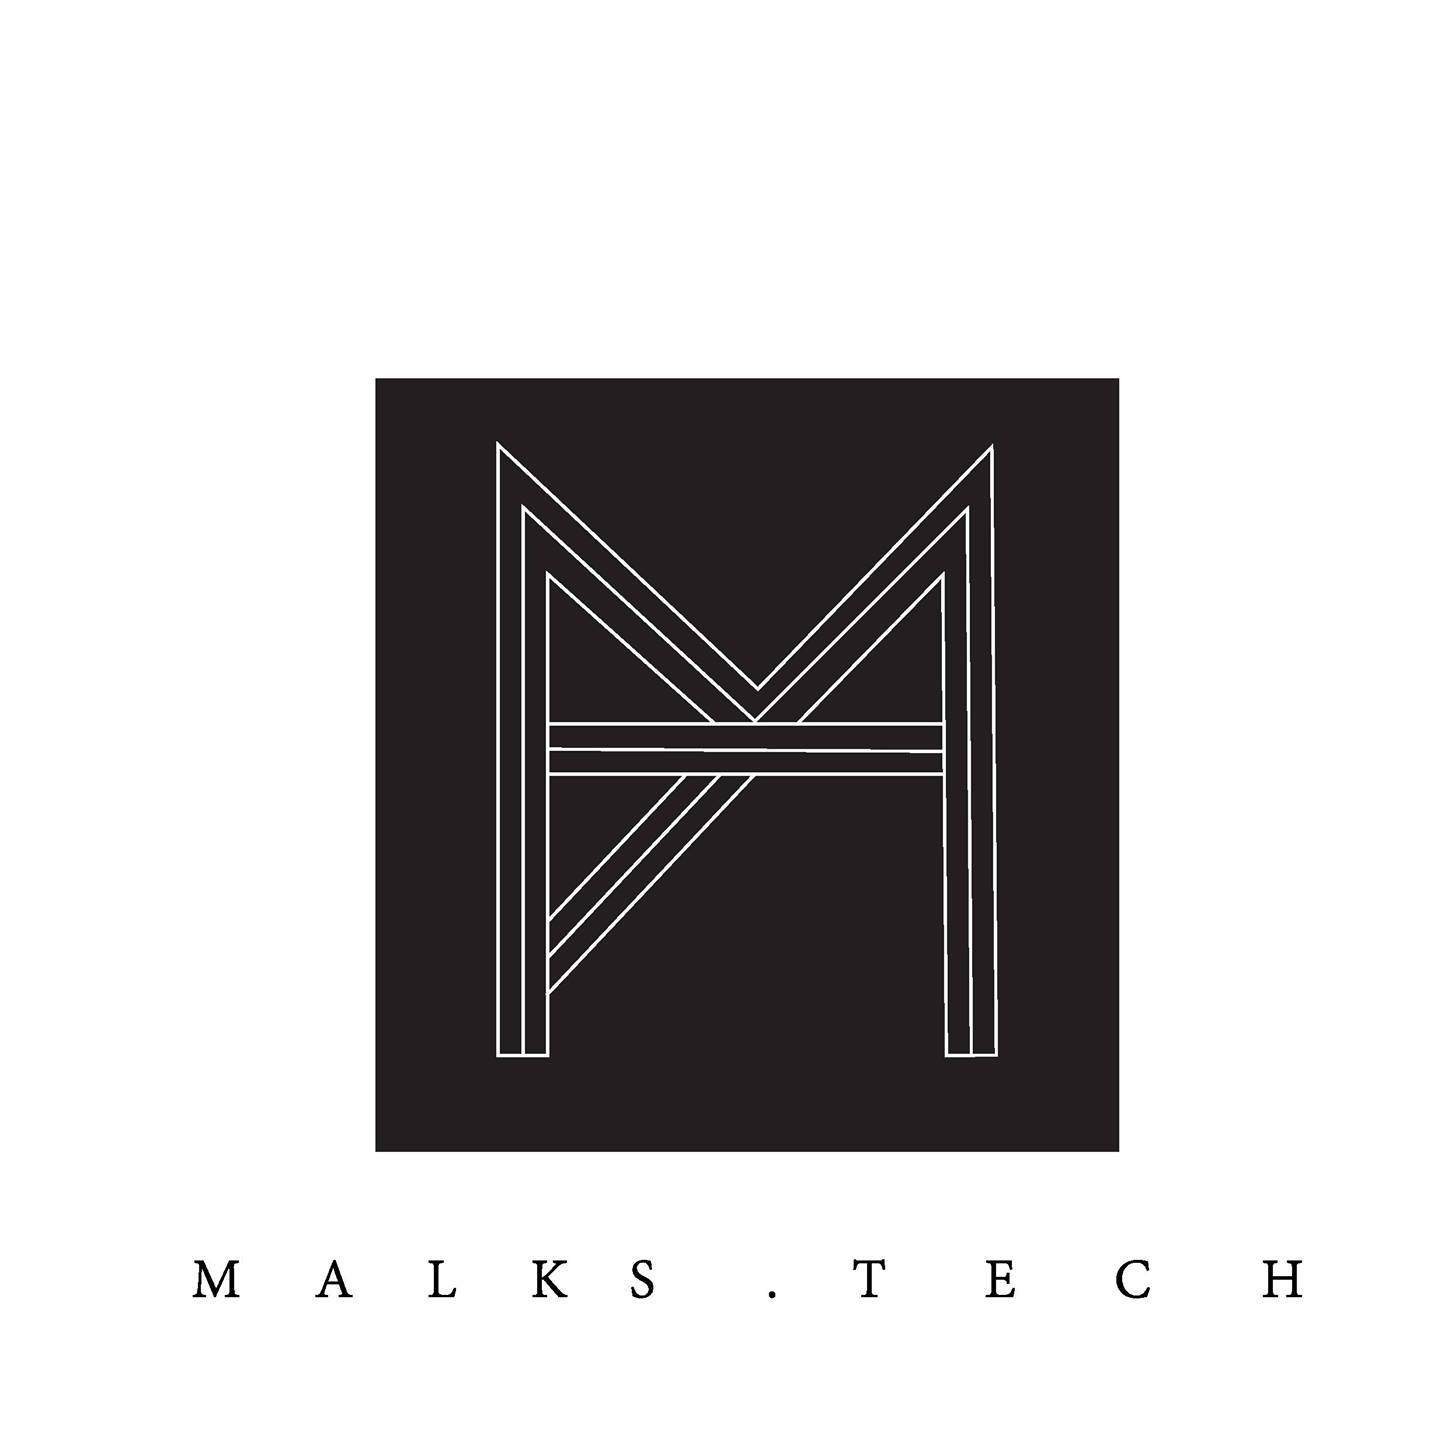 MALKS Tech